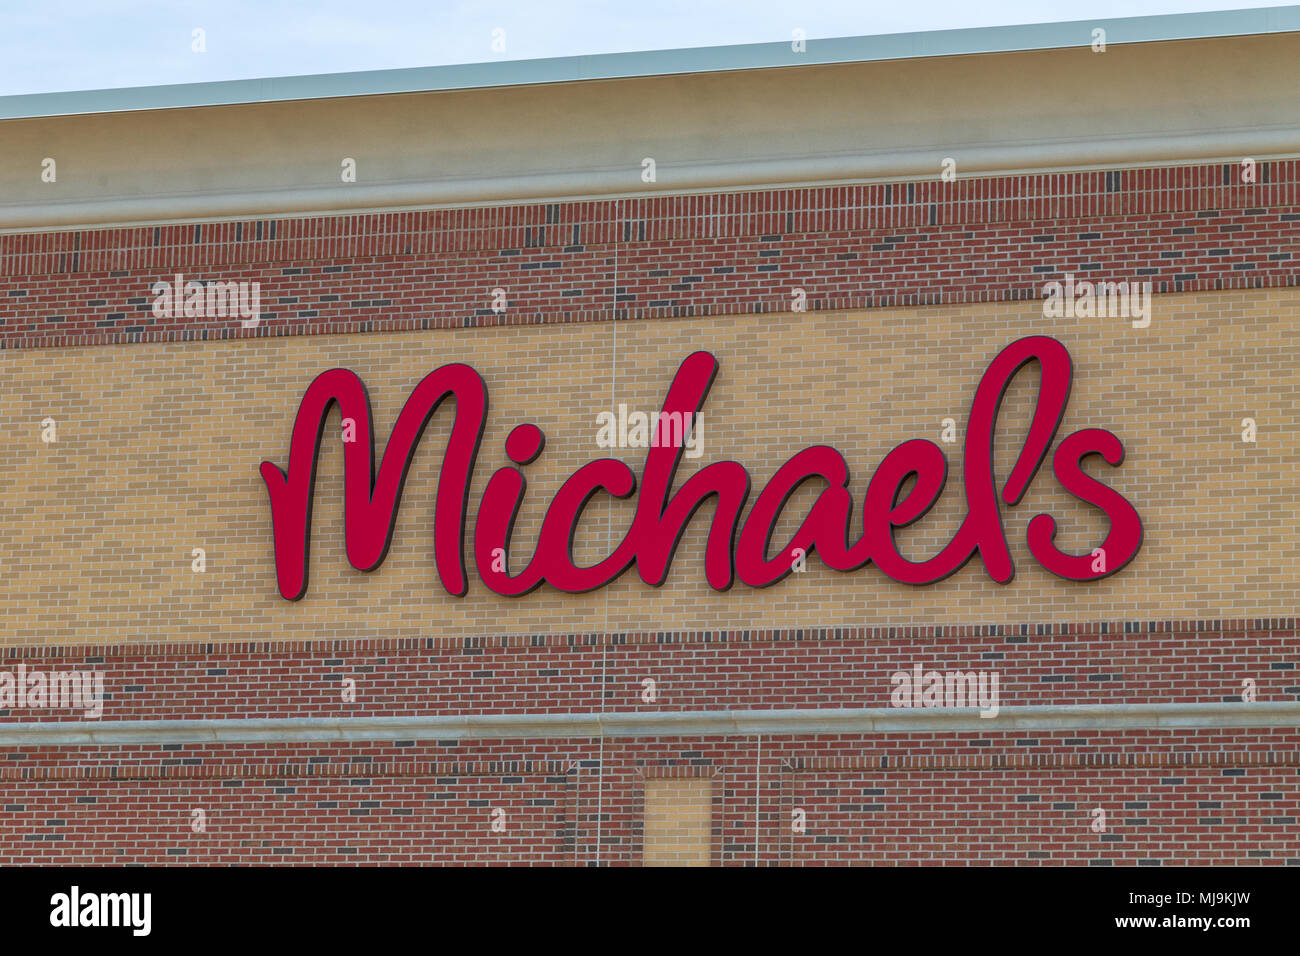 Logo da loja de michaels foto de stock editorial. Imagem de arte - 247113888